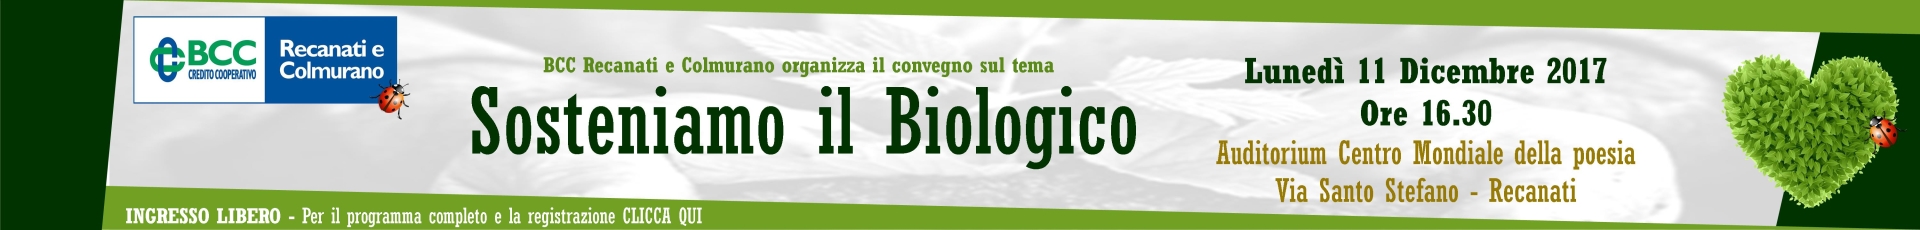 Banner convegno Cittadino Recanati 1920X230 